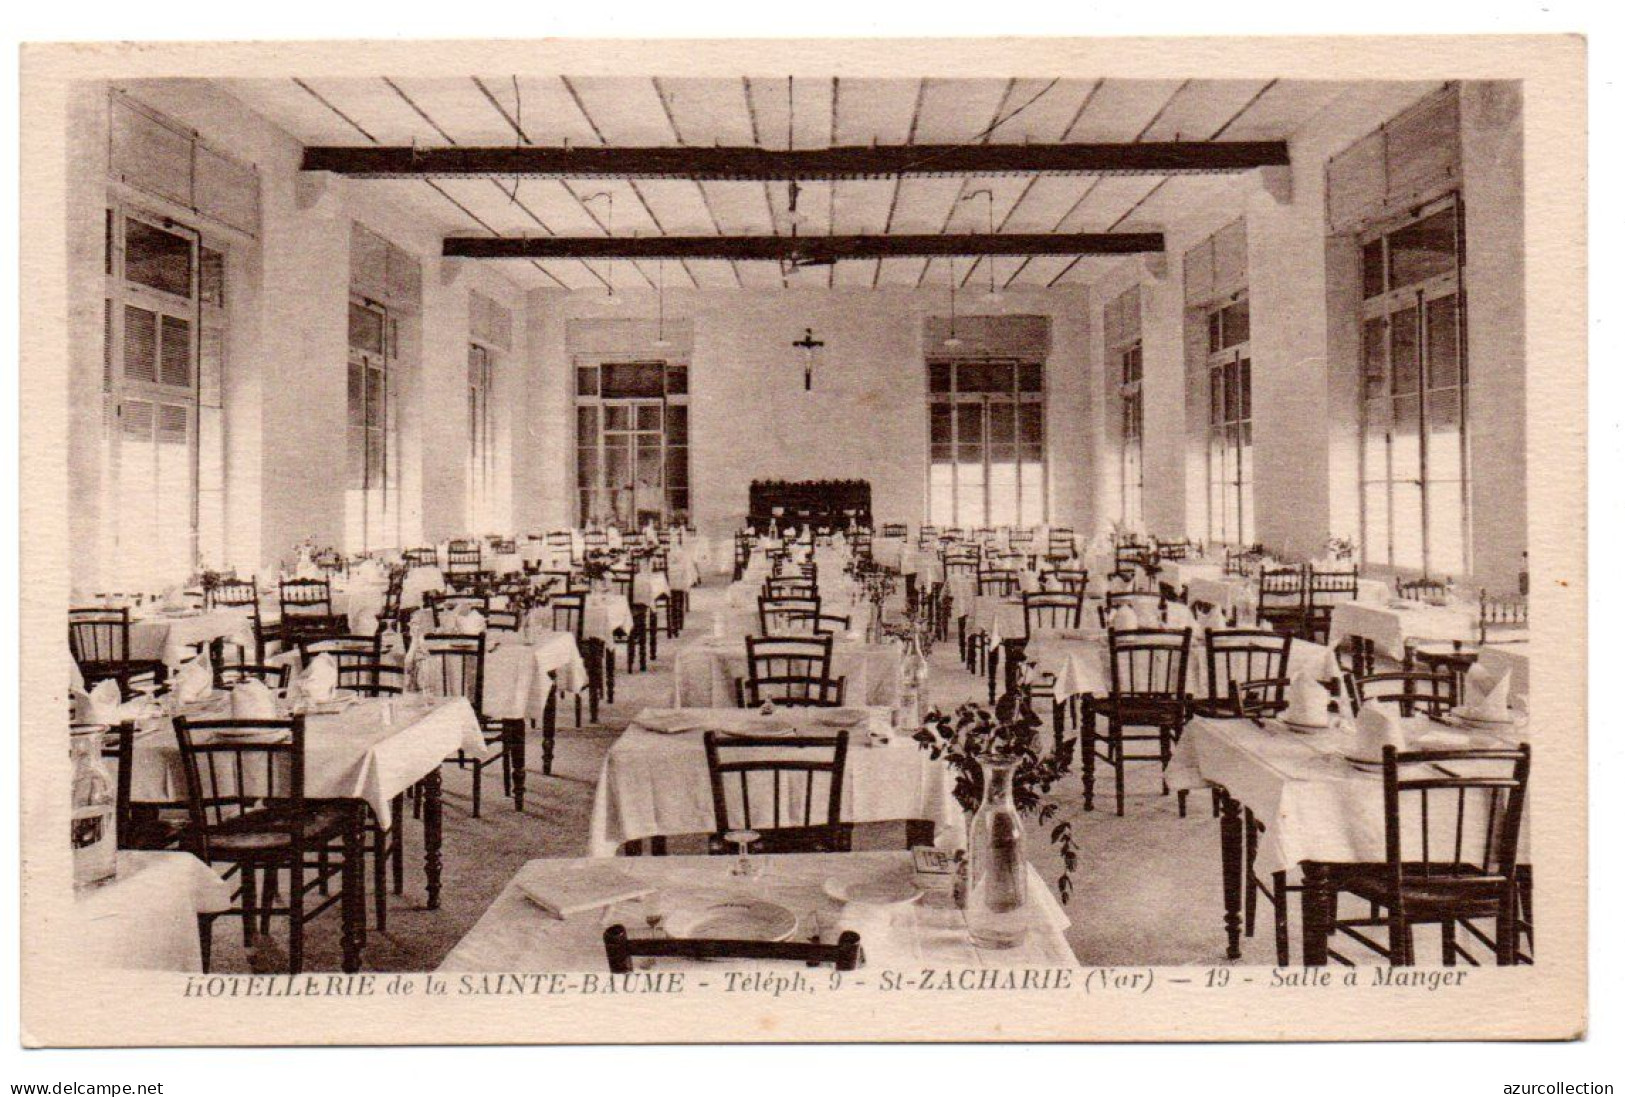 Hotellerie De La Sainte-Baume. Salle à Manger - Saint-Zacharie